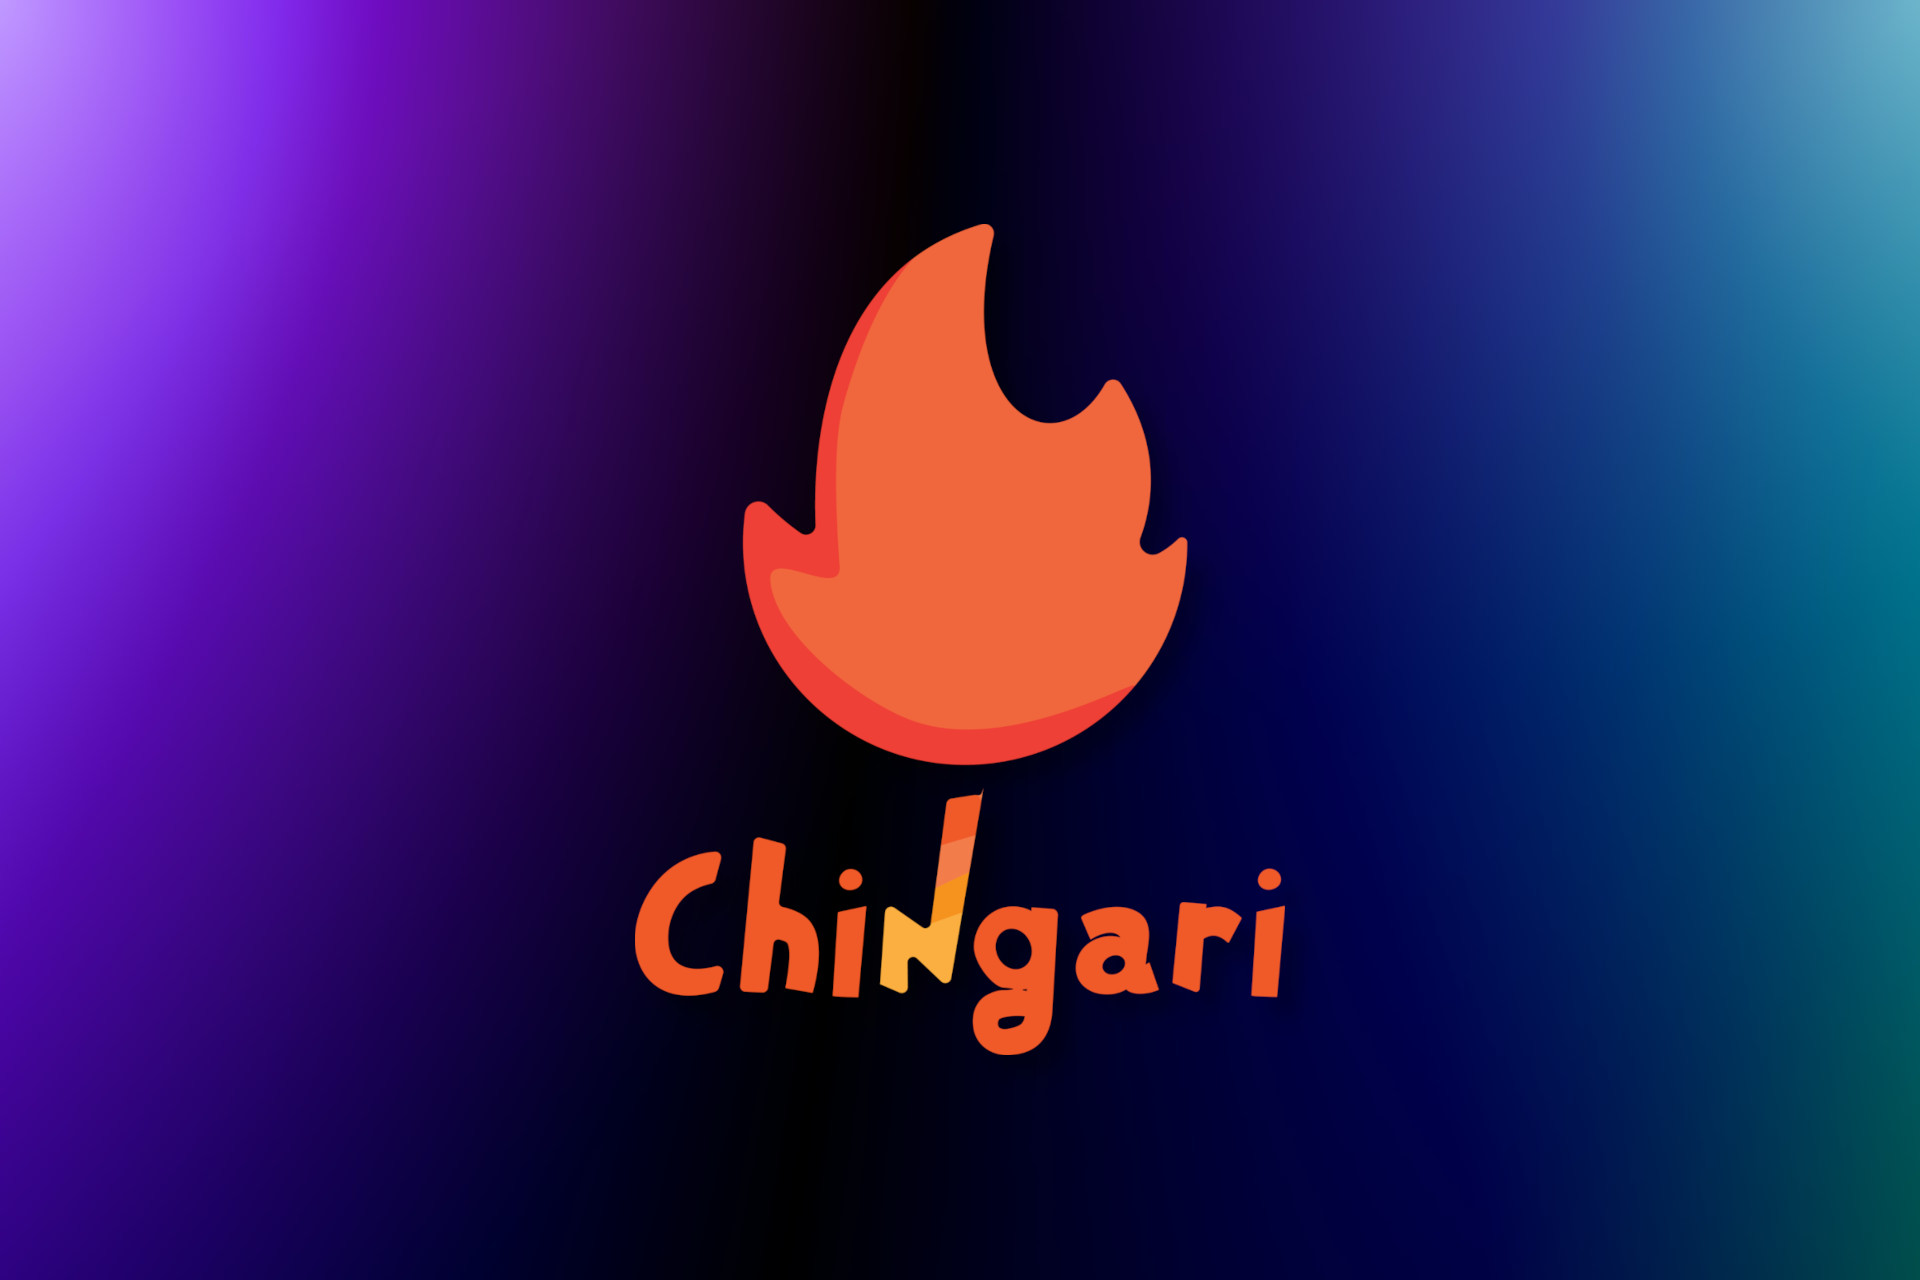 Chingari (GARI) Web3 social media platform image cover